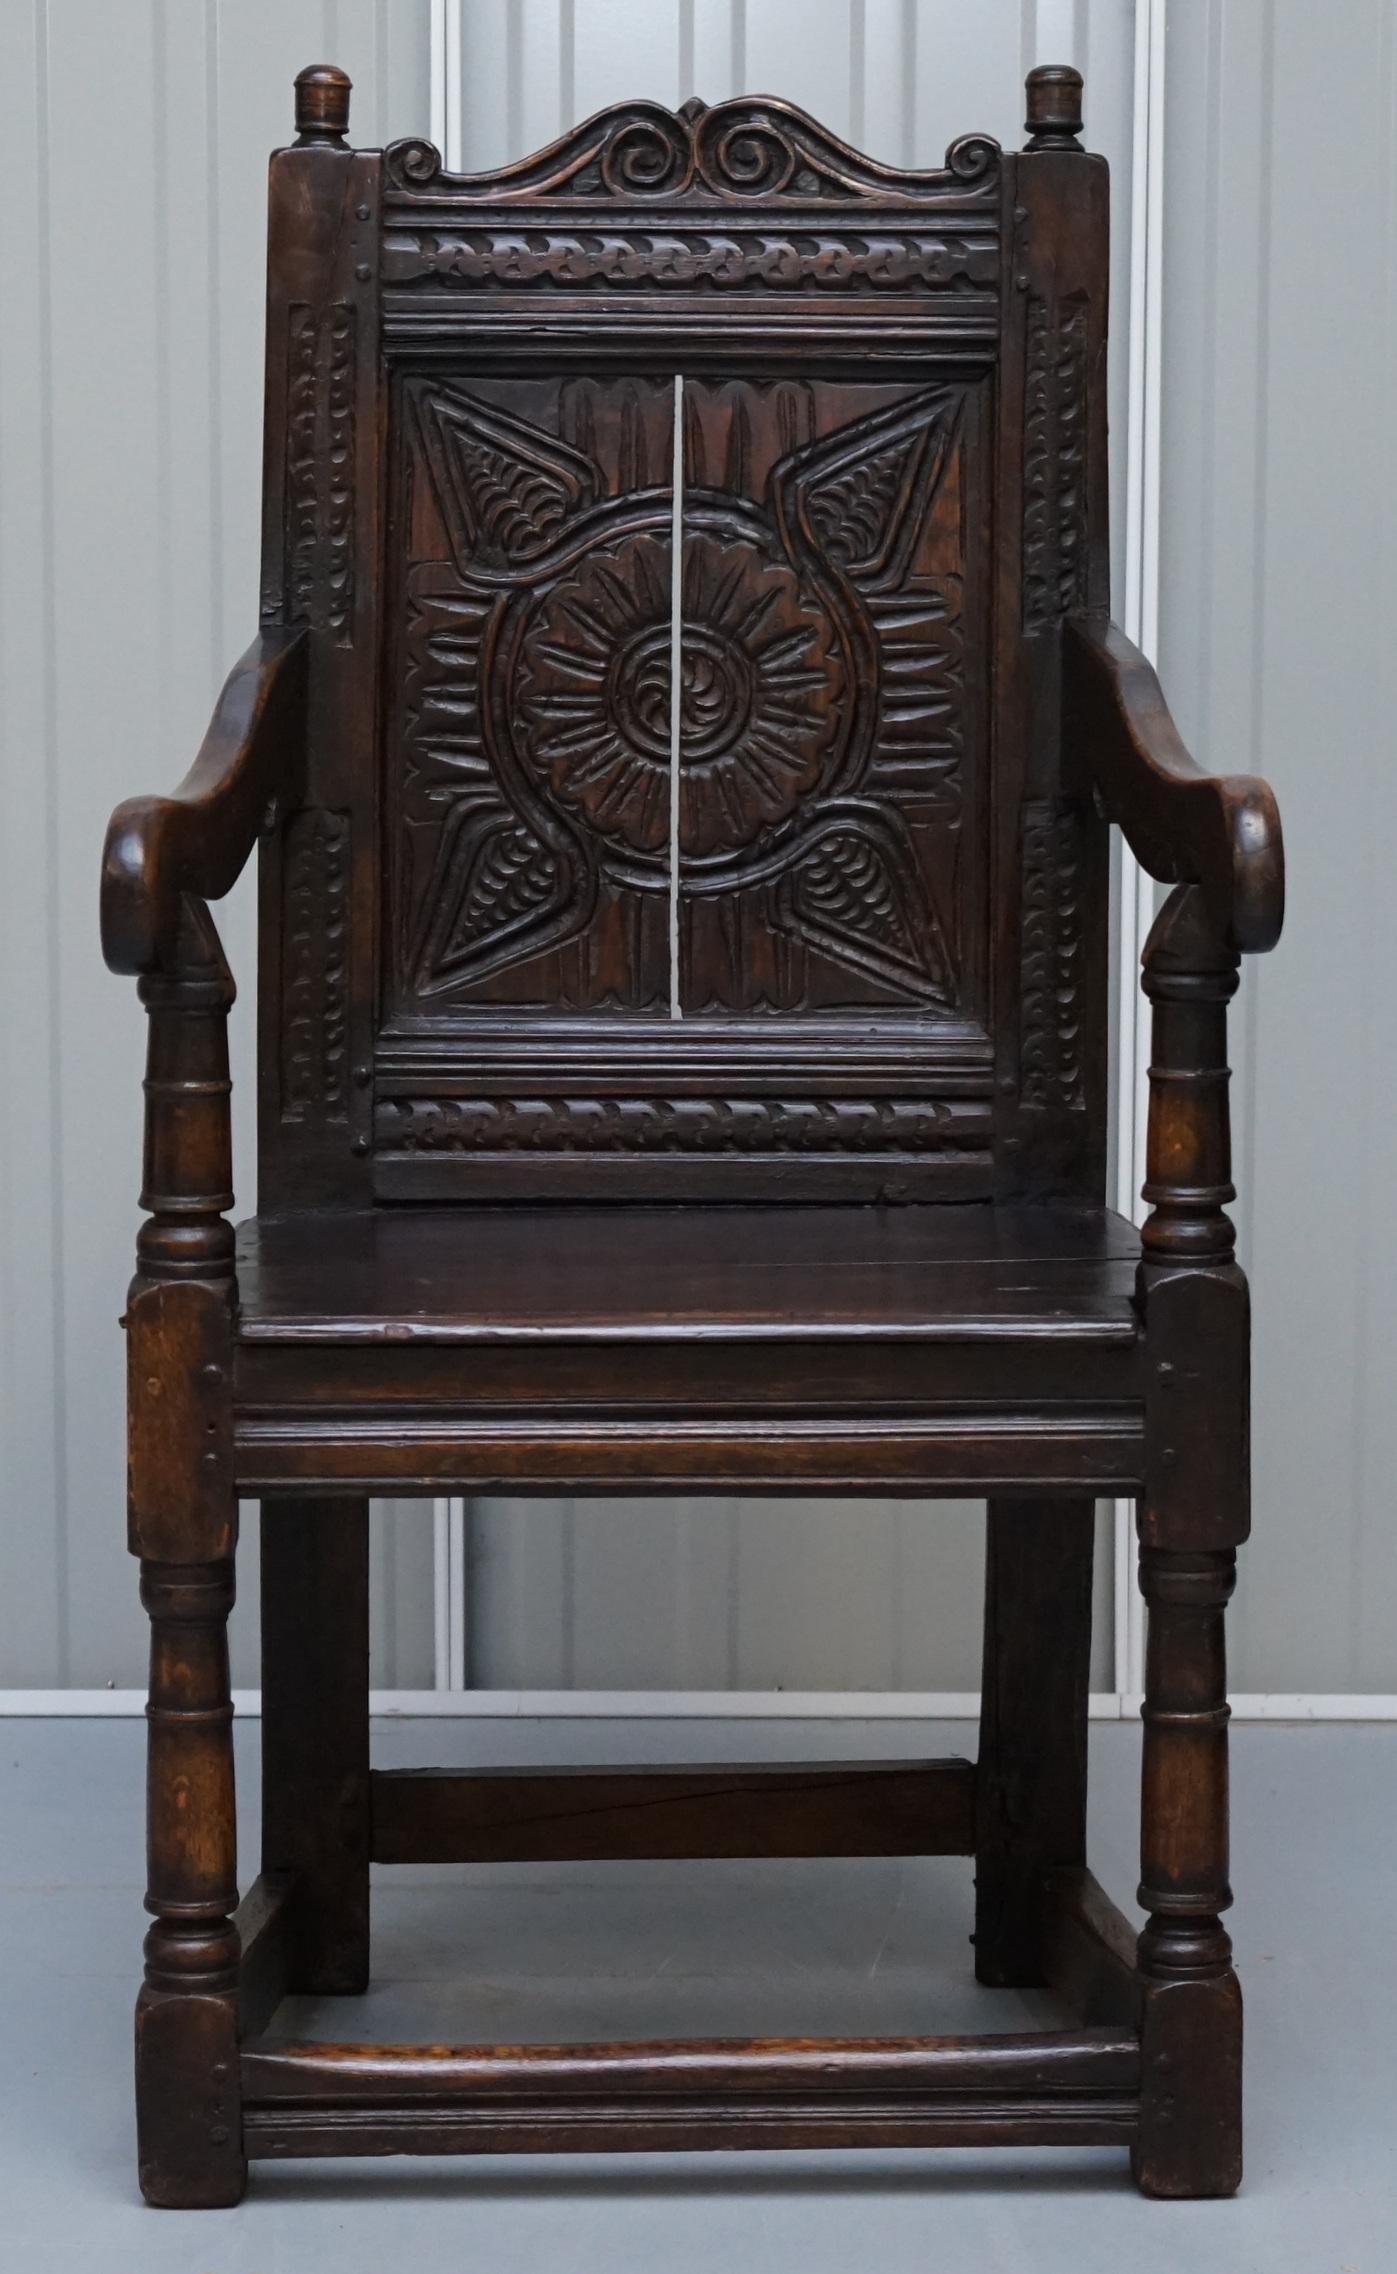 Nous sommes ravis d'offrir à la vente ce fauteuil Wainscot du nord de l'Angleterre, exceptionnellement rare, sculpté à la main en chêne massif, datant du 17ème siècle

Une pièce très décorative et originale avec des fleurons tournés au-dessus d'un